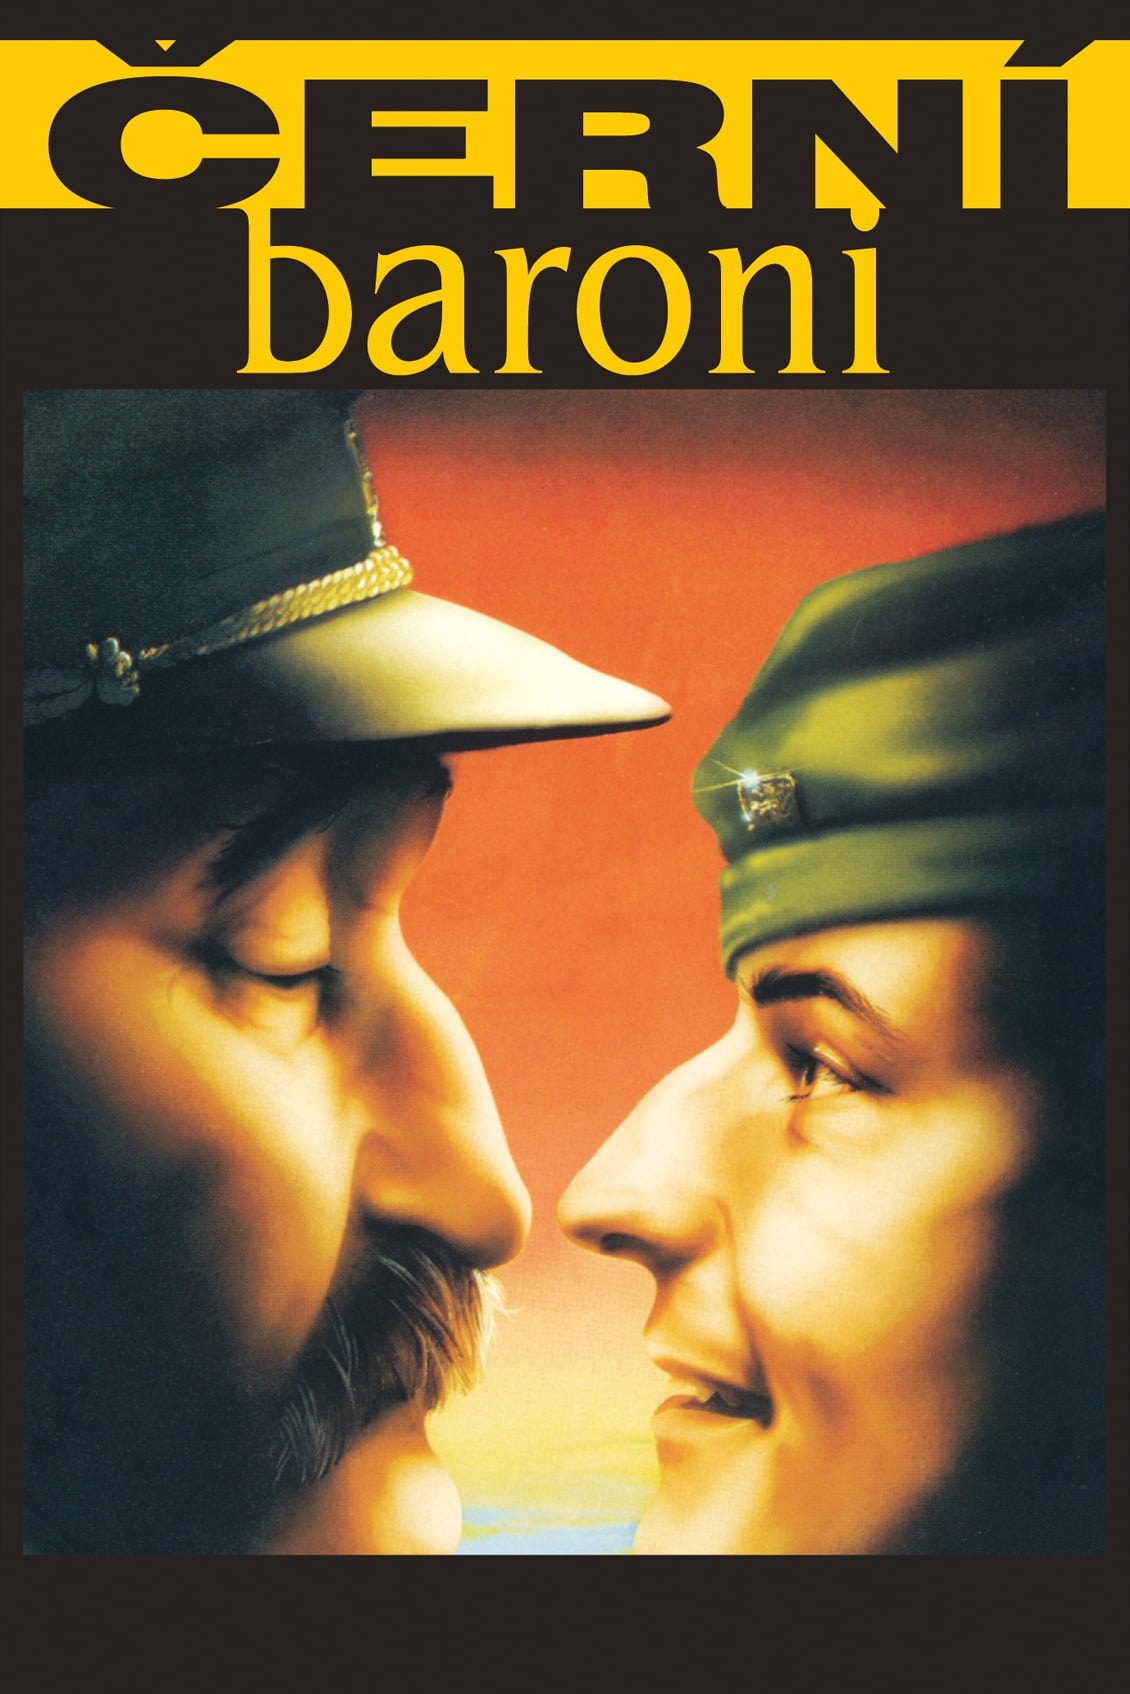 Cerni baroni (1992)